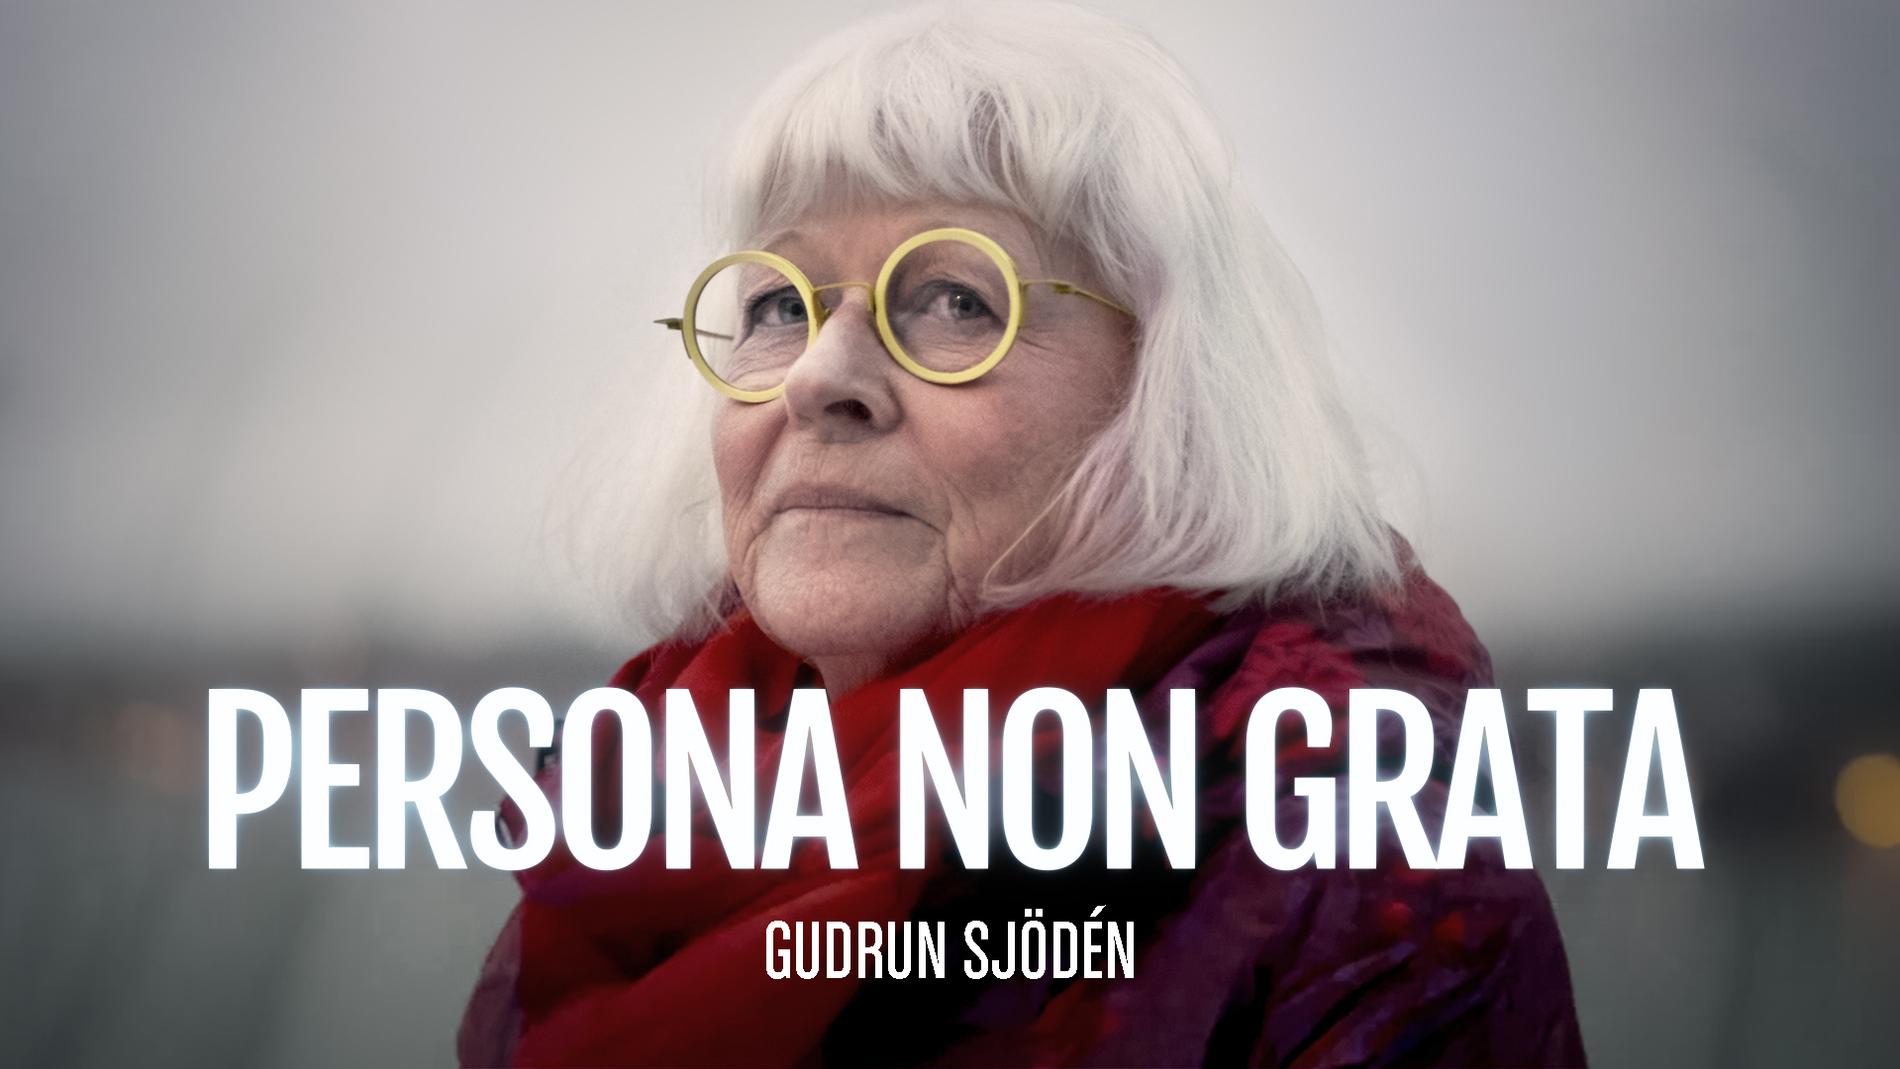 SVT:s program ”Persona non grata” har släppt ett nytt avsnitt om Gudrun Sjödén.